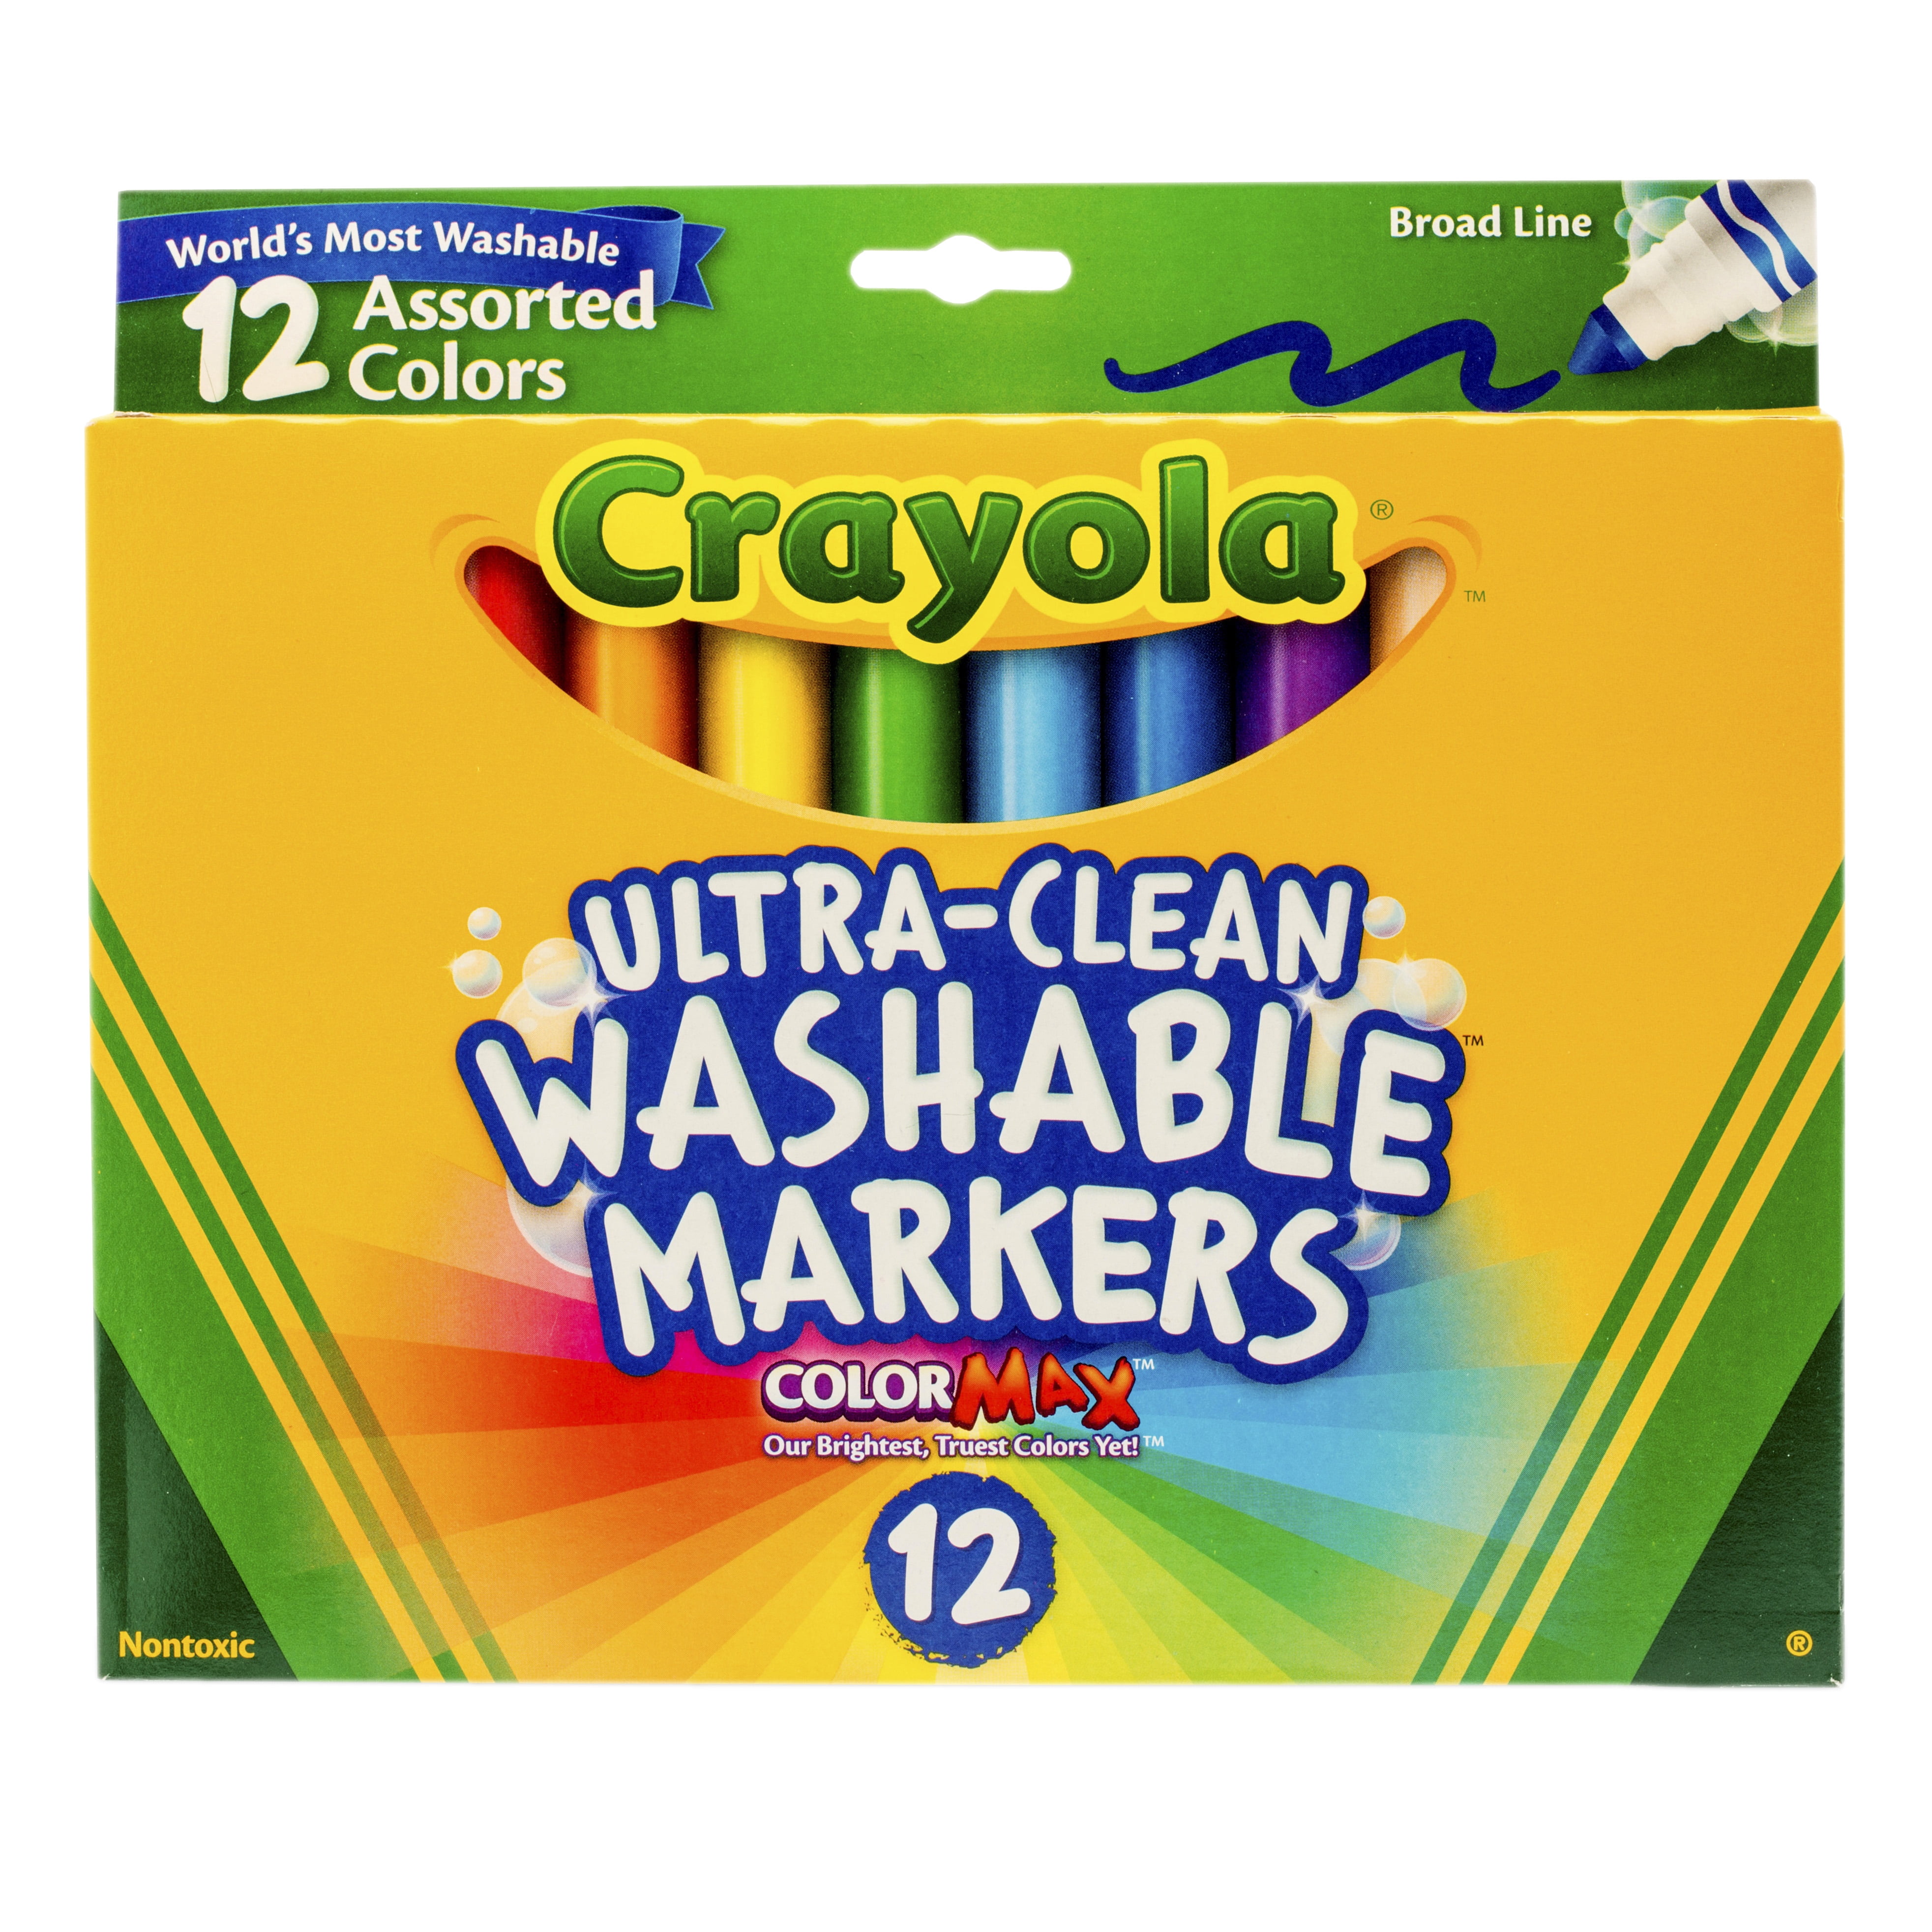 Crayola Washable Marker Set 12 Colors Broad Walmart Com Walmart Com